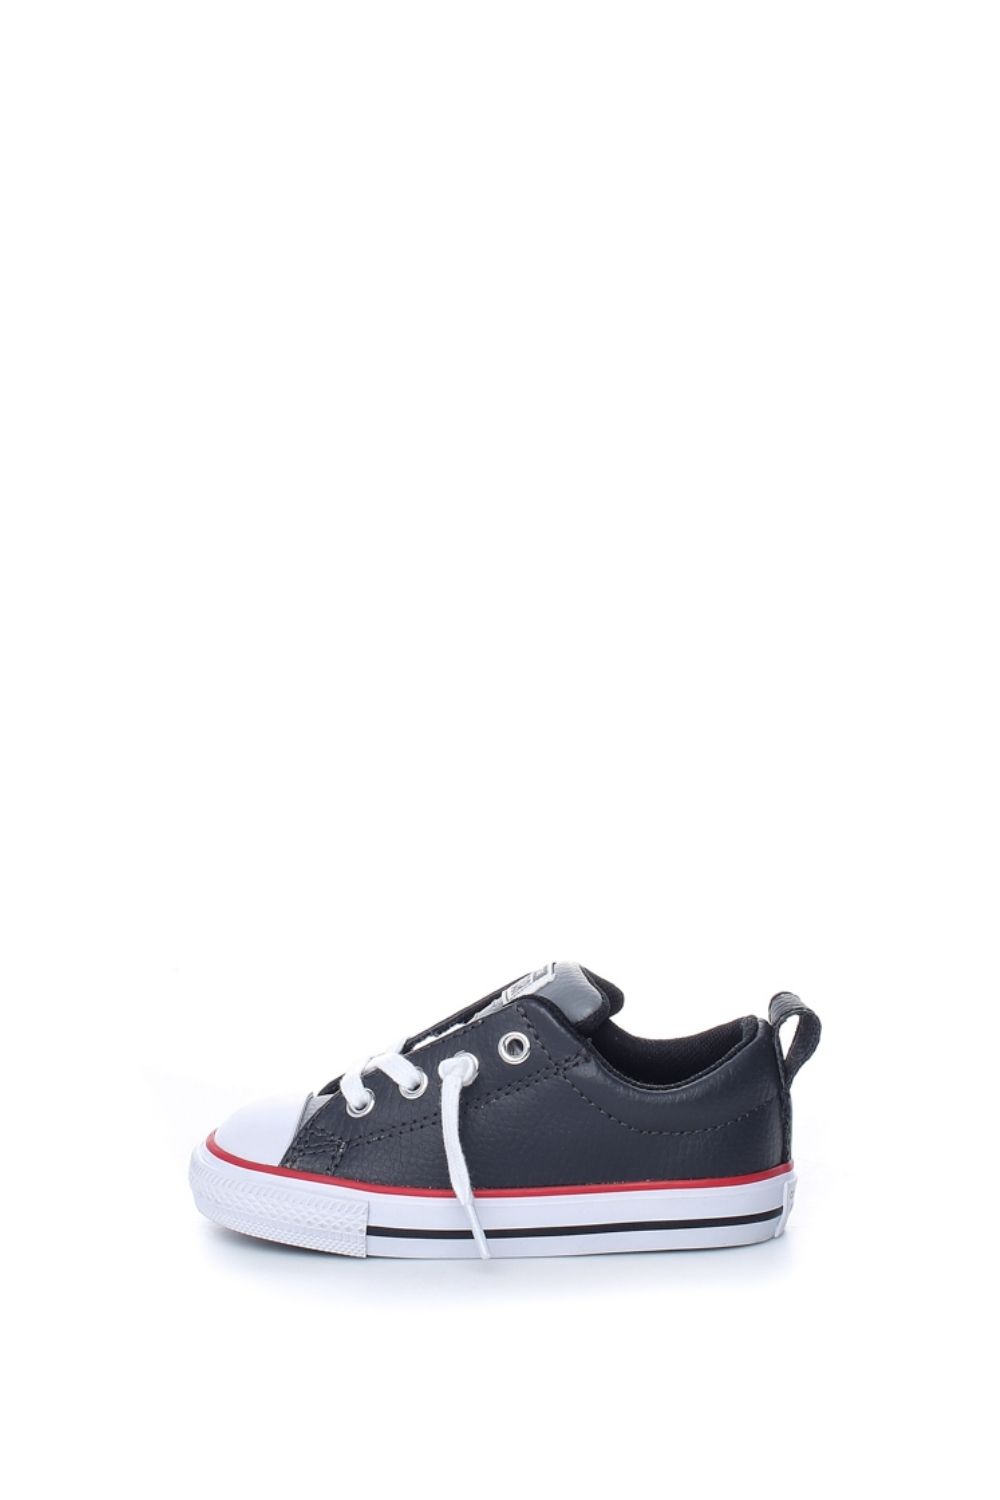 Παιδικά/Baby/Παπούτσια/Sneakers CONVERSE - Βρεφικά sneakers CONVERSE CHUCK TAYLOR ALL STAR STREET μαύρα